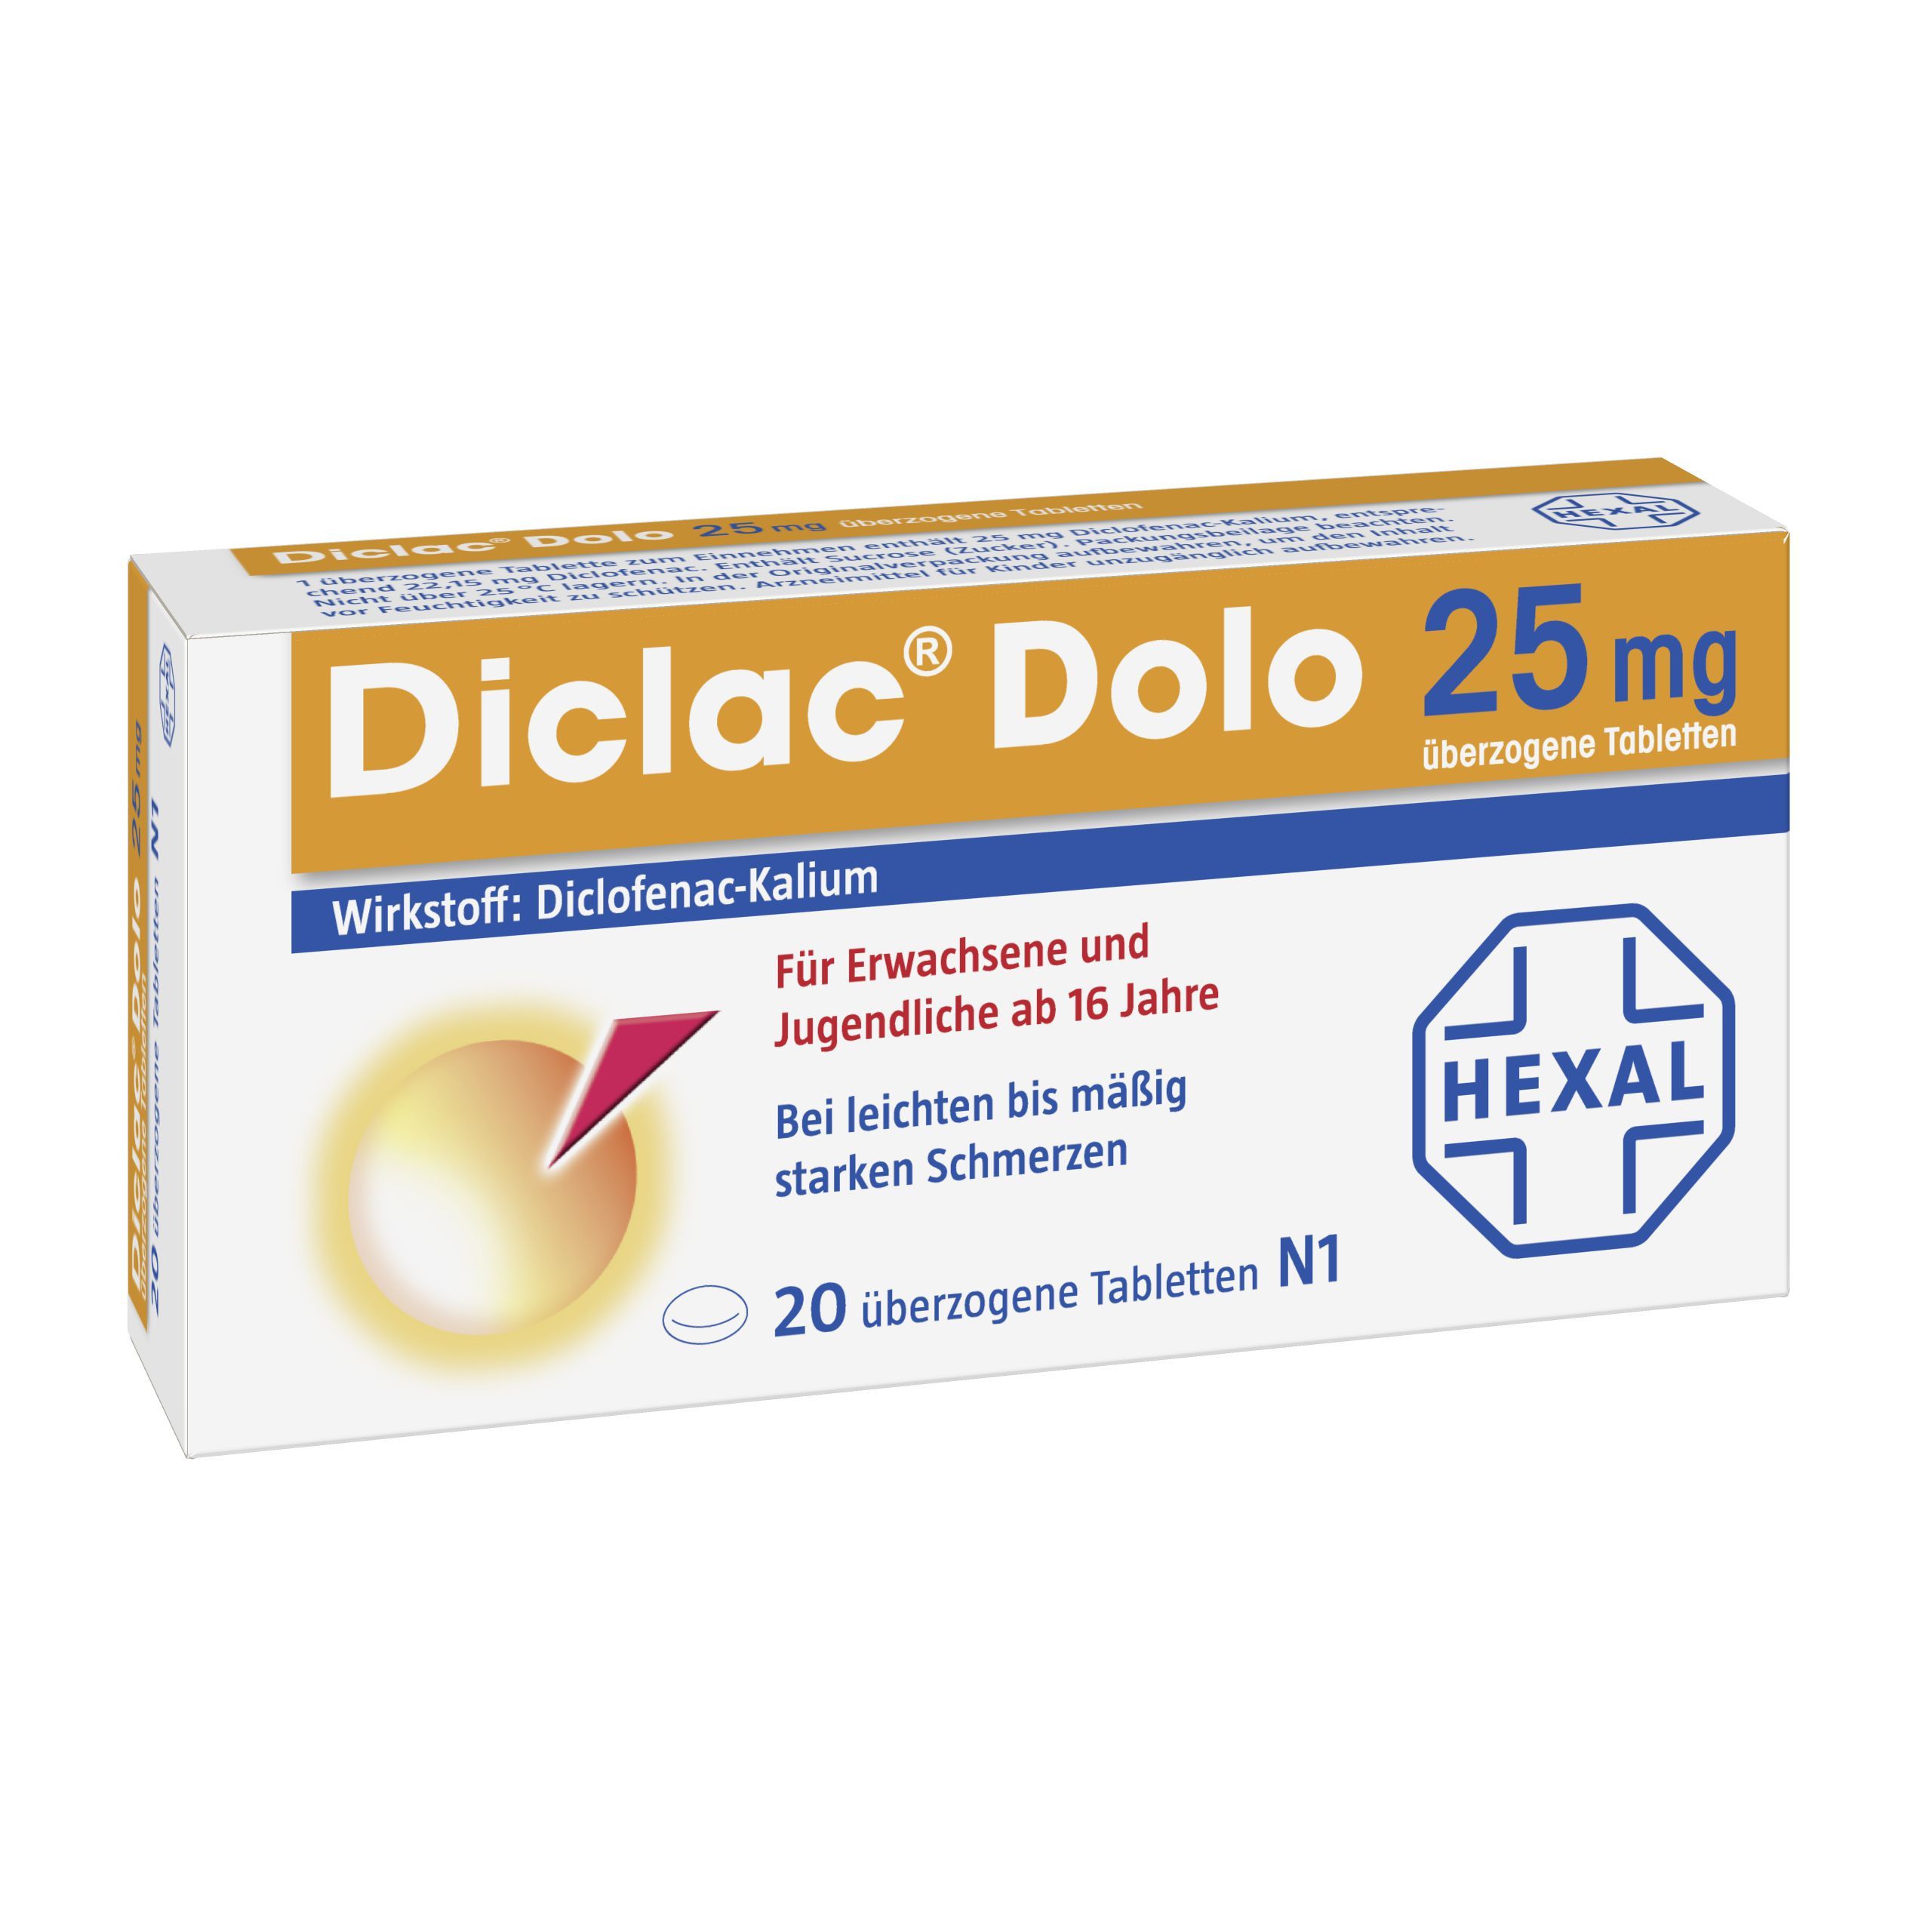 Diclac® Dolo 25 mg